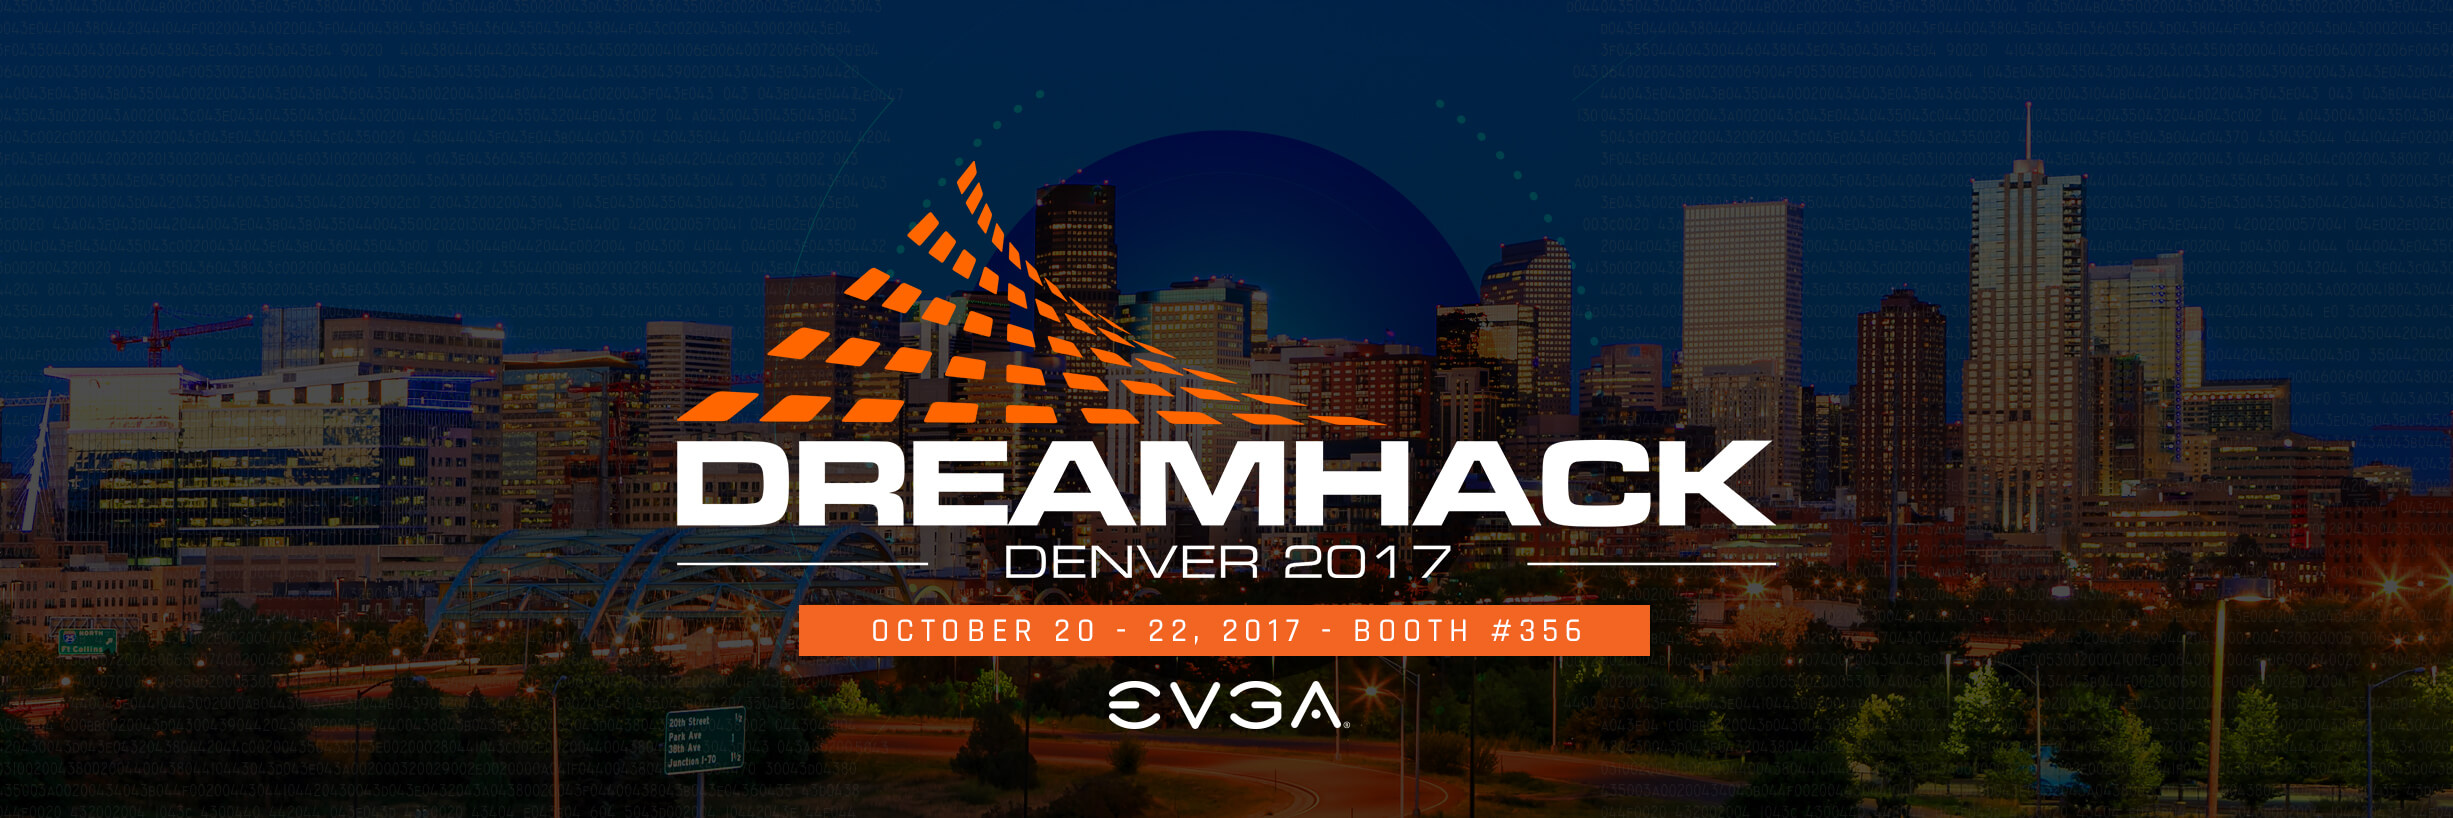 EVGA at Dreamhack Denver 2017